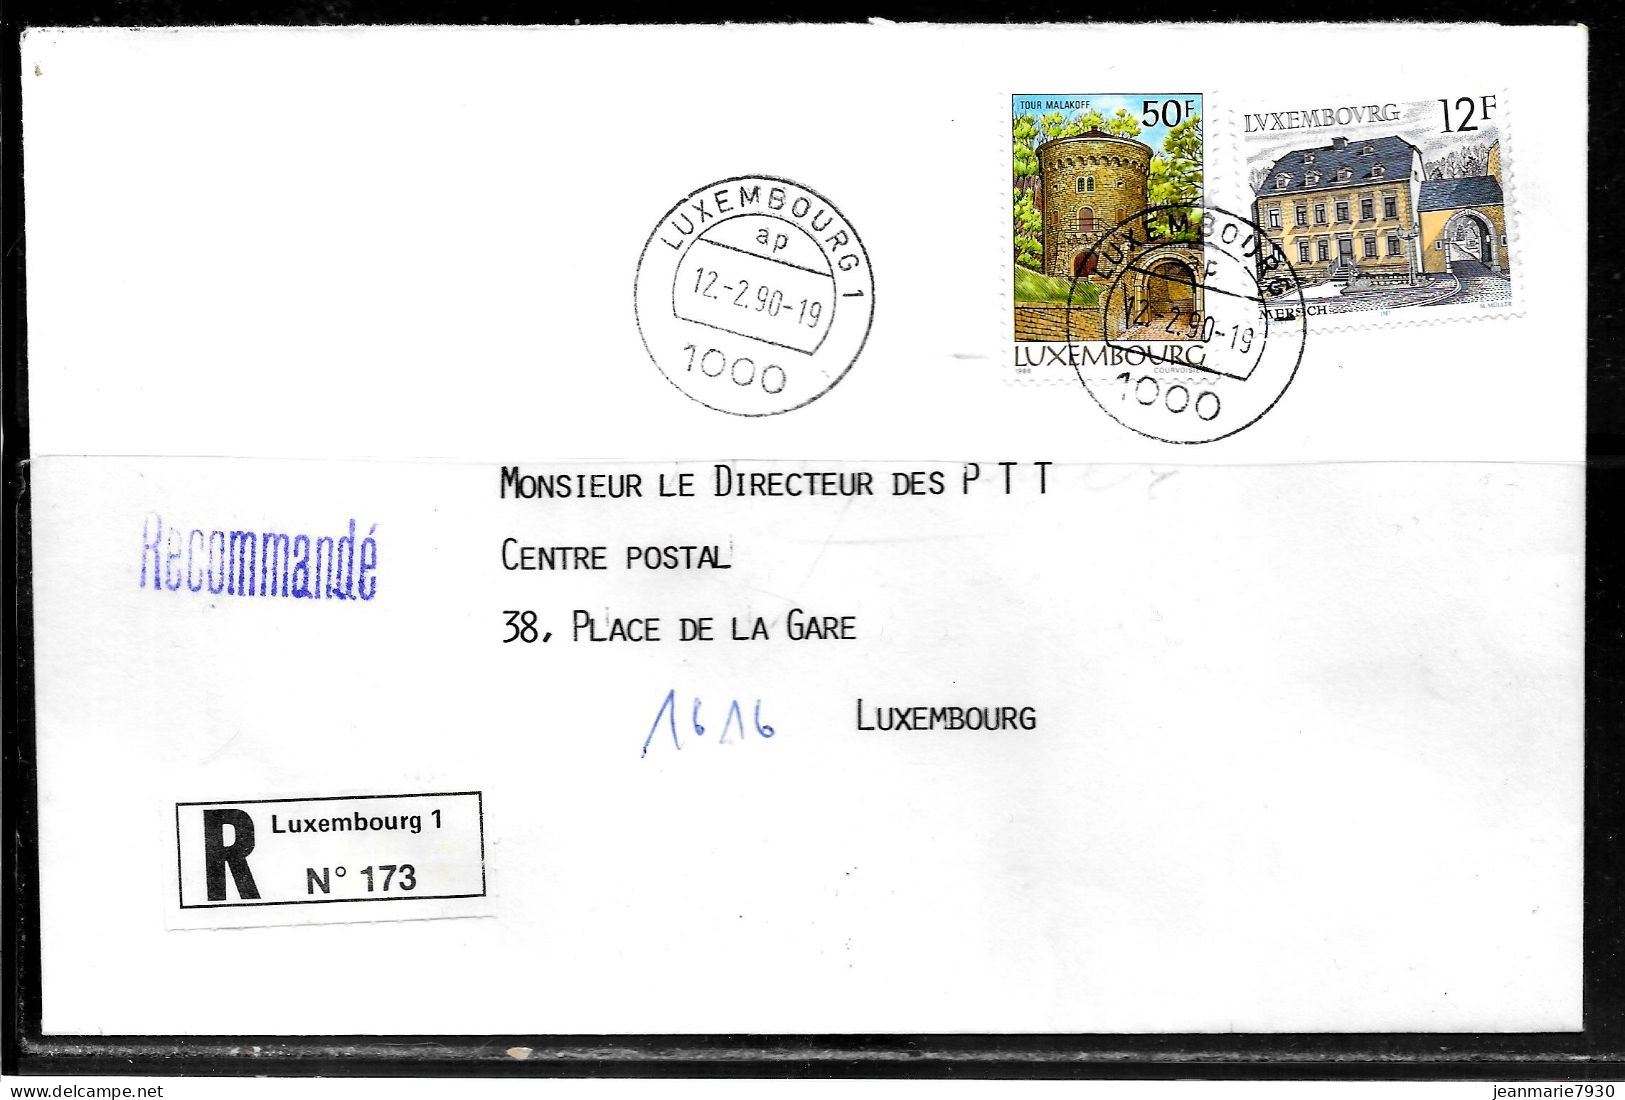 H387 - LETTRE RECOMMANDEE DE LUXEMBOURG DU 12/09/90 - Lettres & Documents